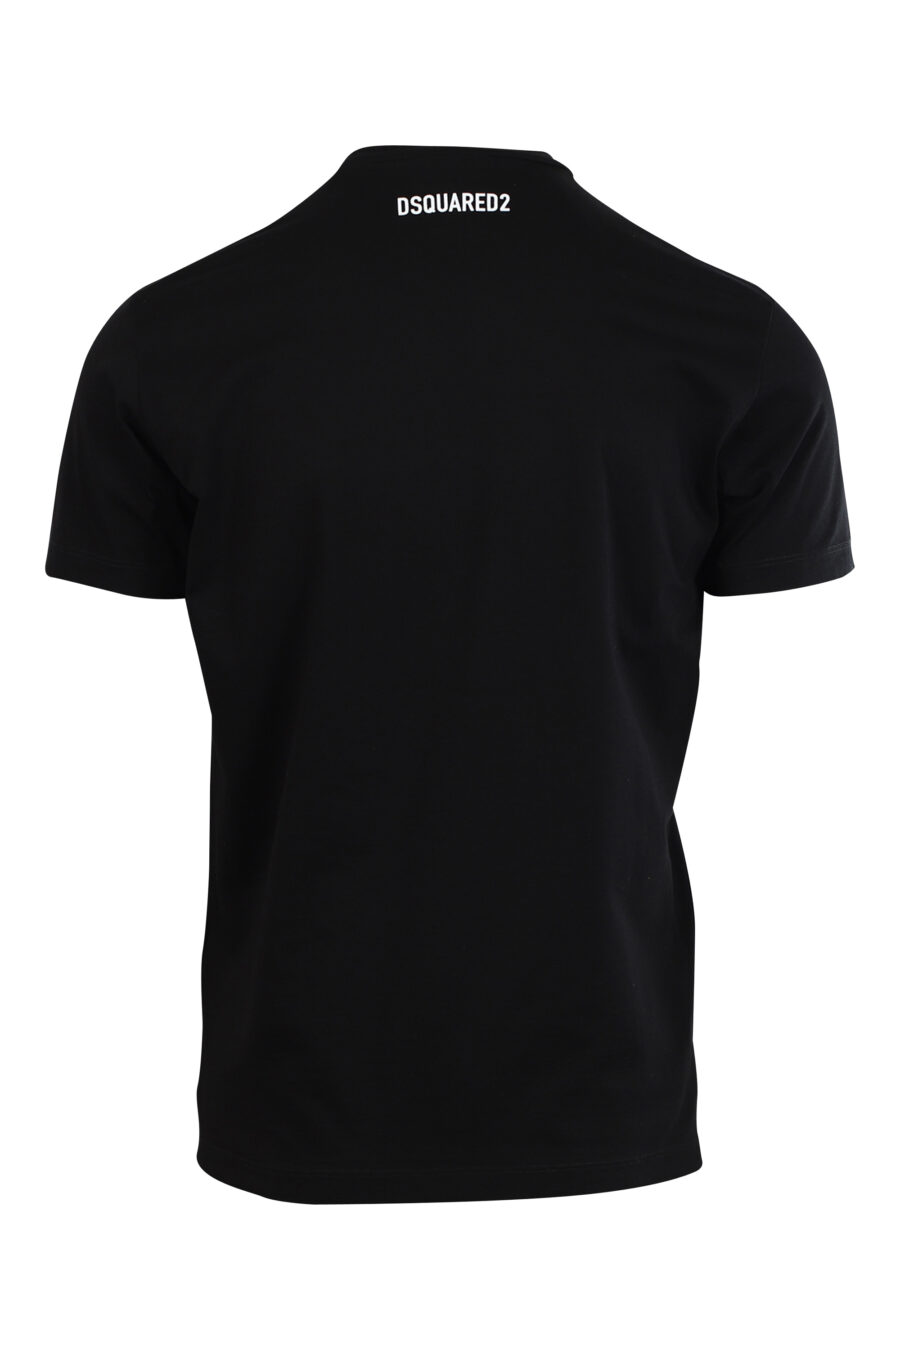 Schwarzes T-Shirt mit Hunde-Maxilogo "Gepixelt" - 8052134980774 2